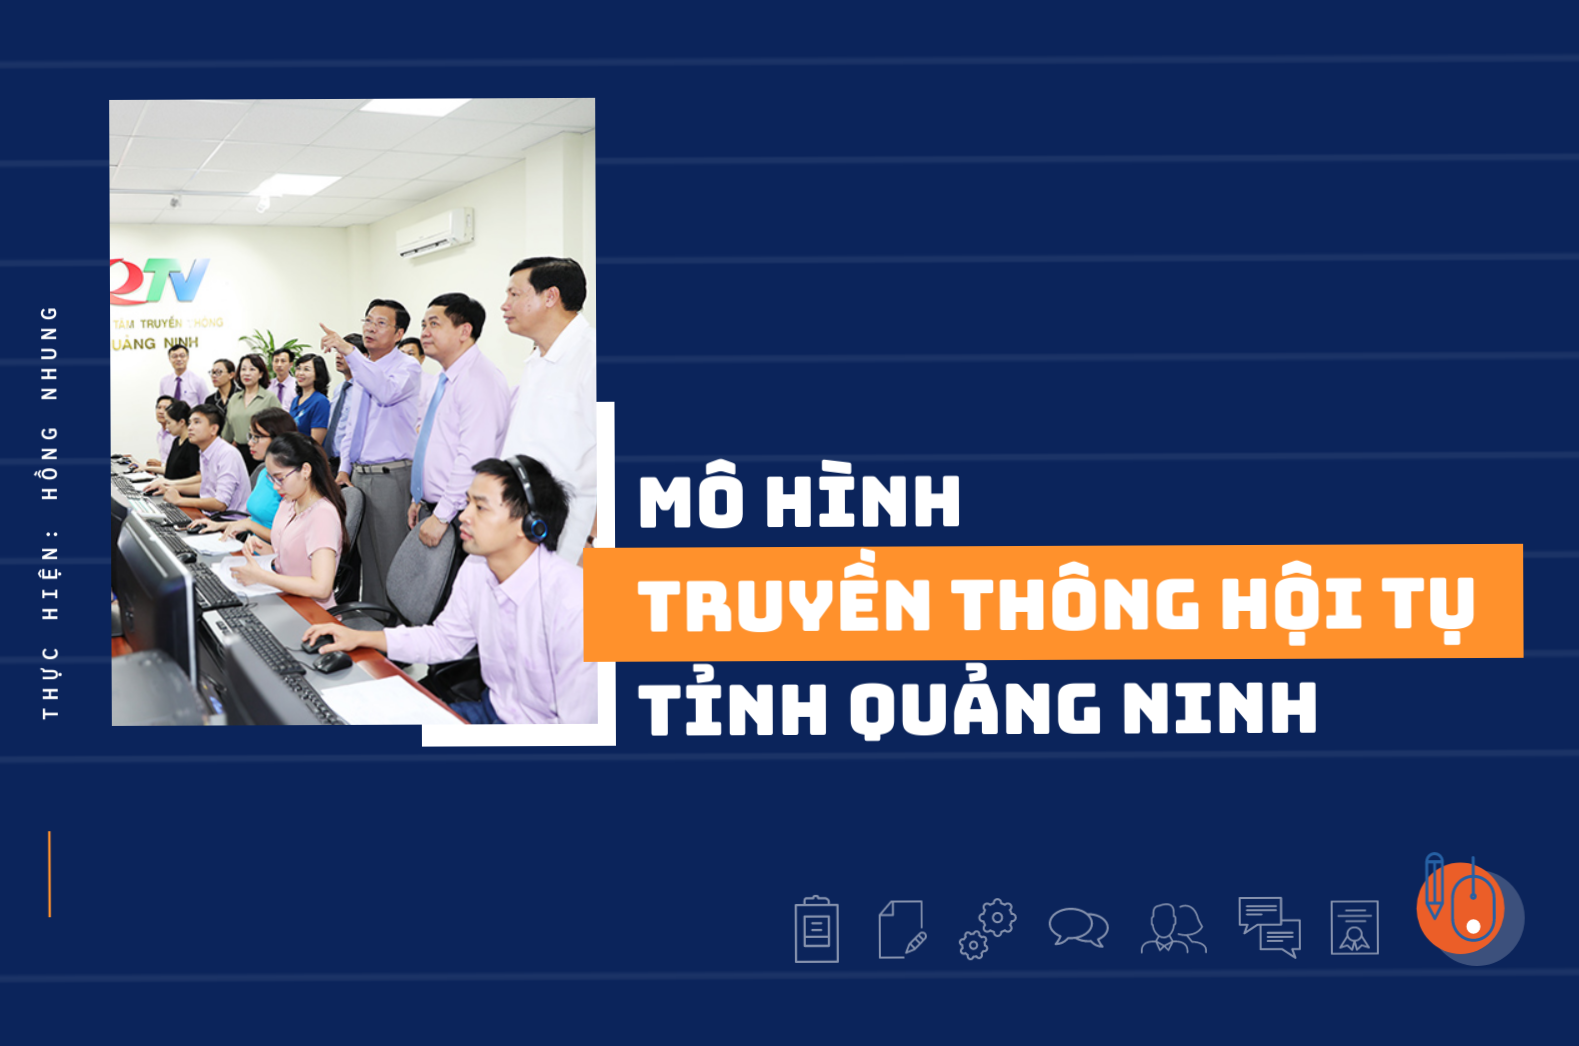 Mô hình truyền thông hội tụ tỉnh Quảng Ninh